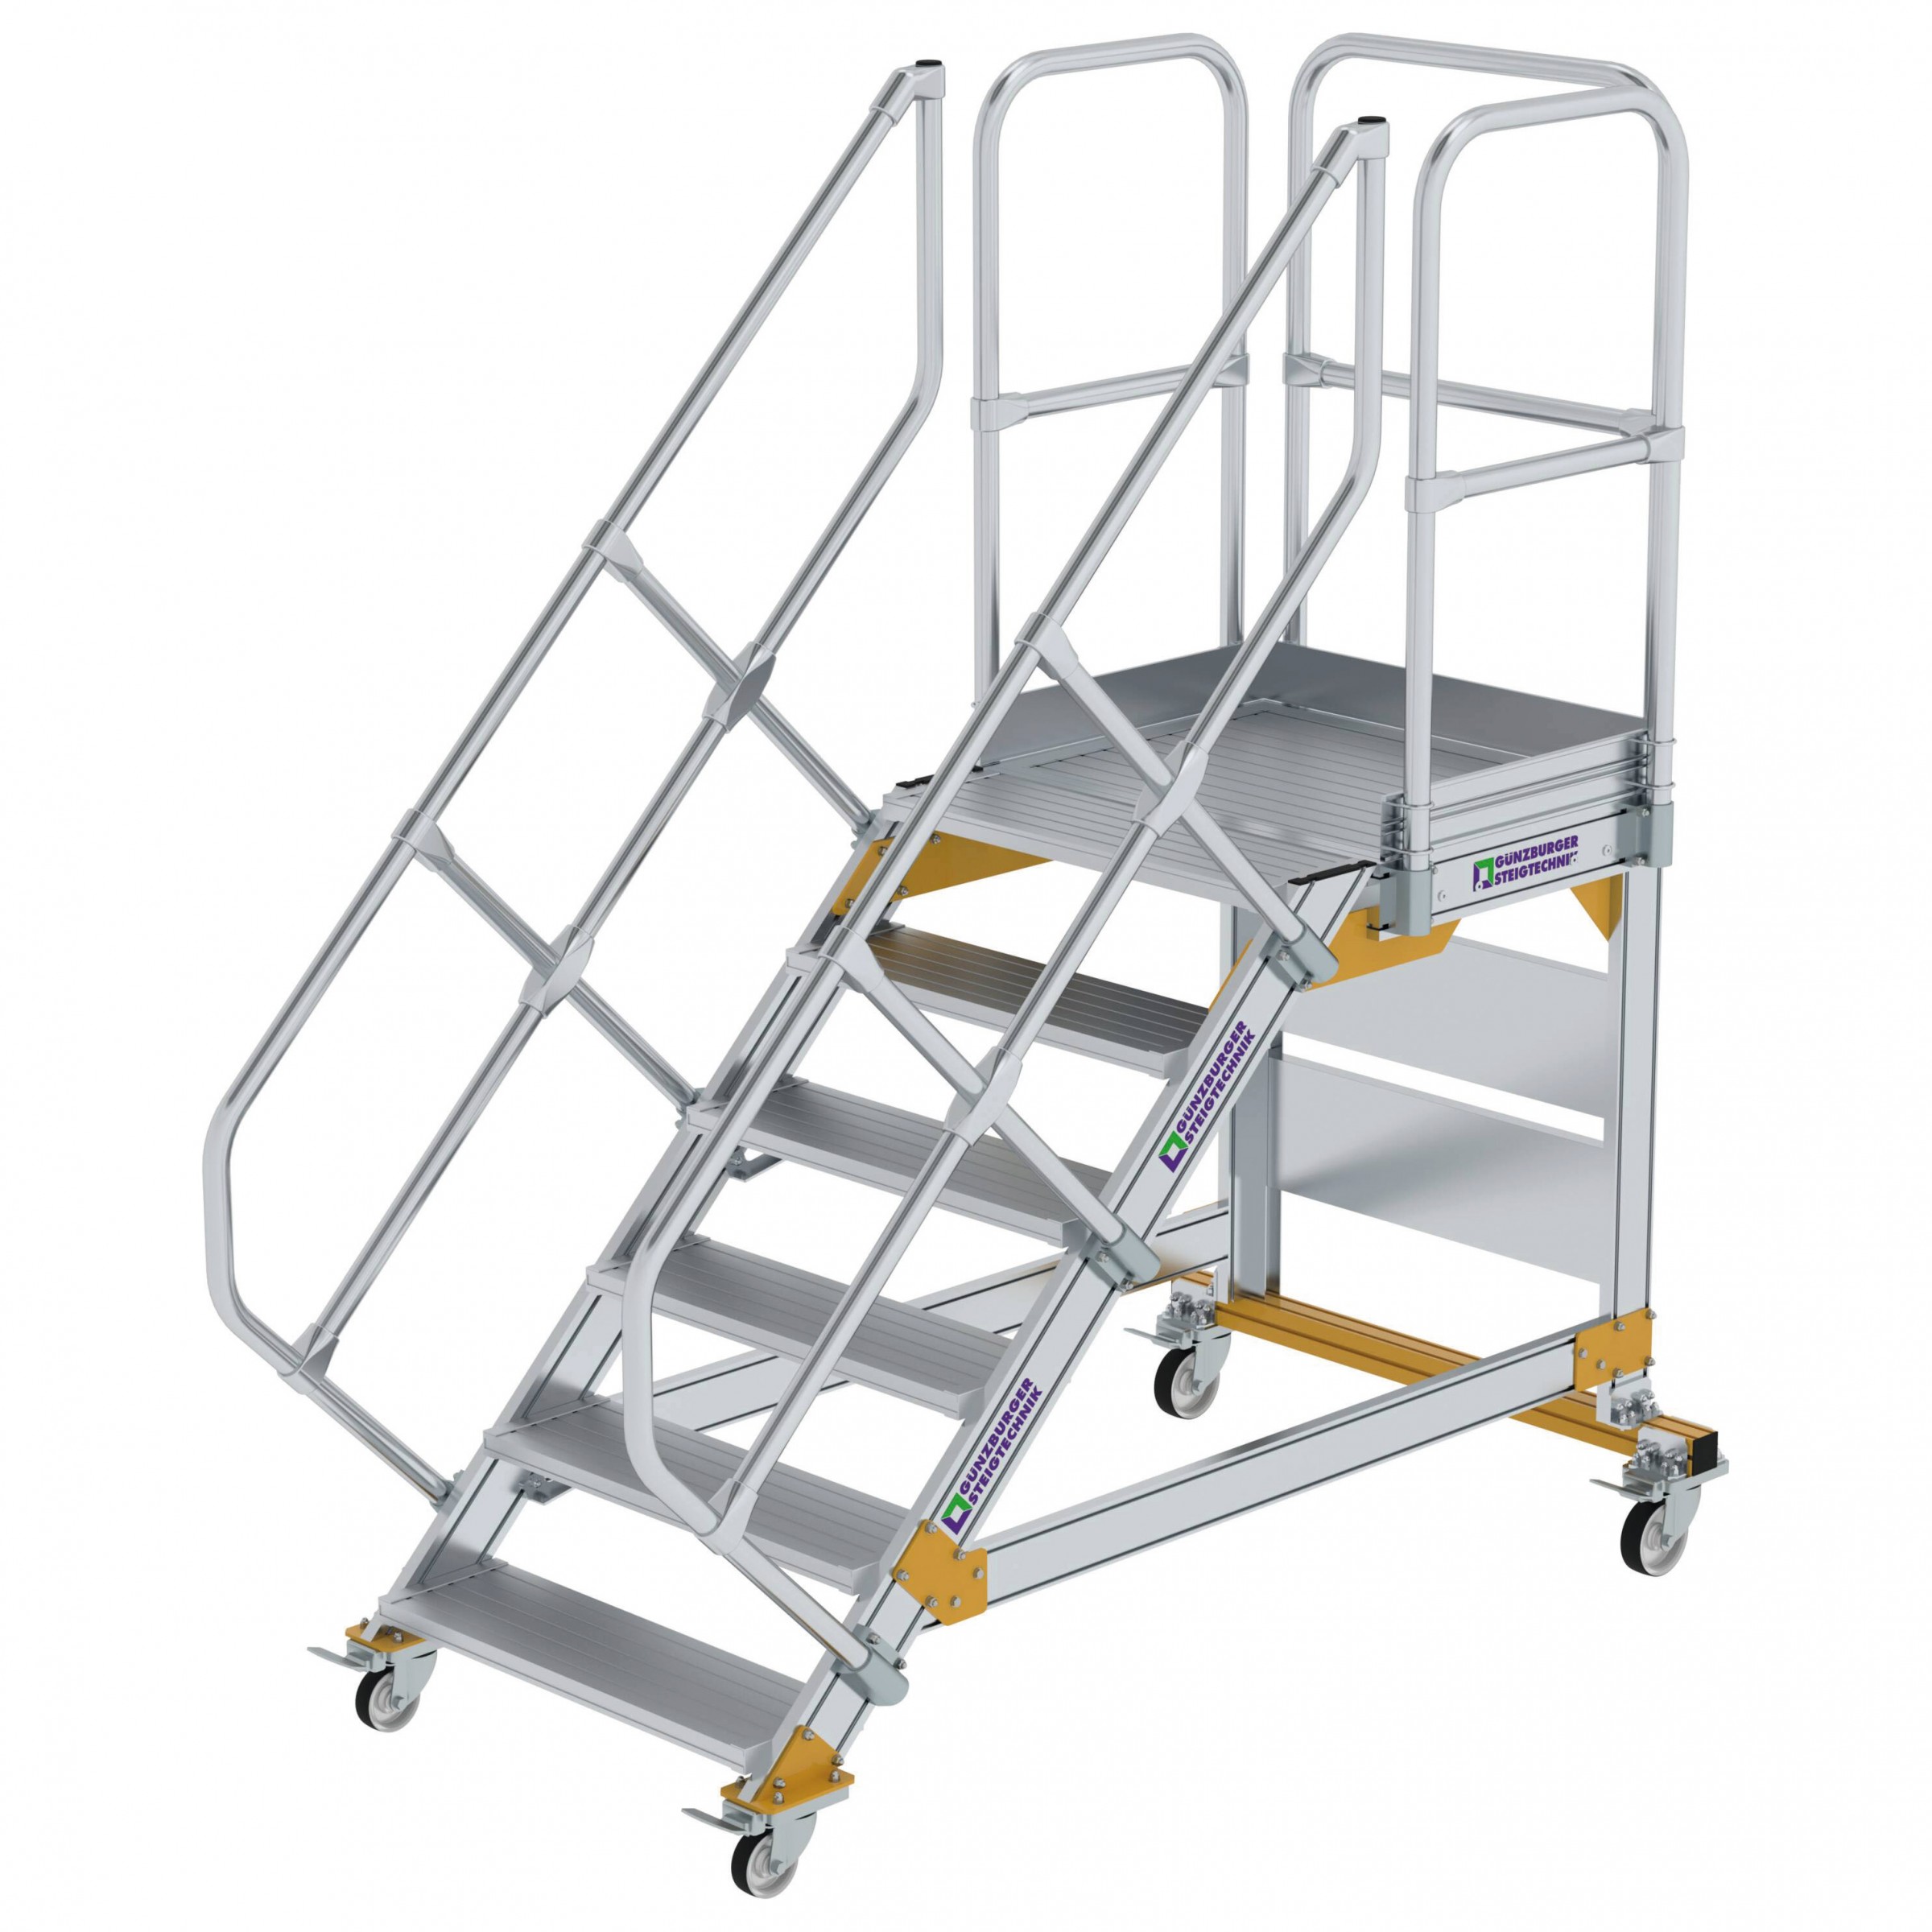 Aluminium-Plattform-Treppe fahrbar 45°, Stufenbreite 800 mm, 4 Stufen